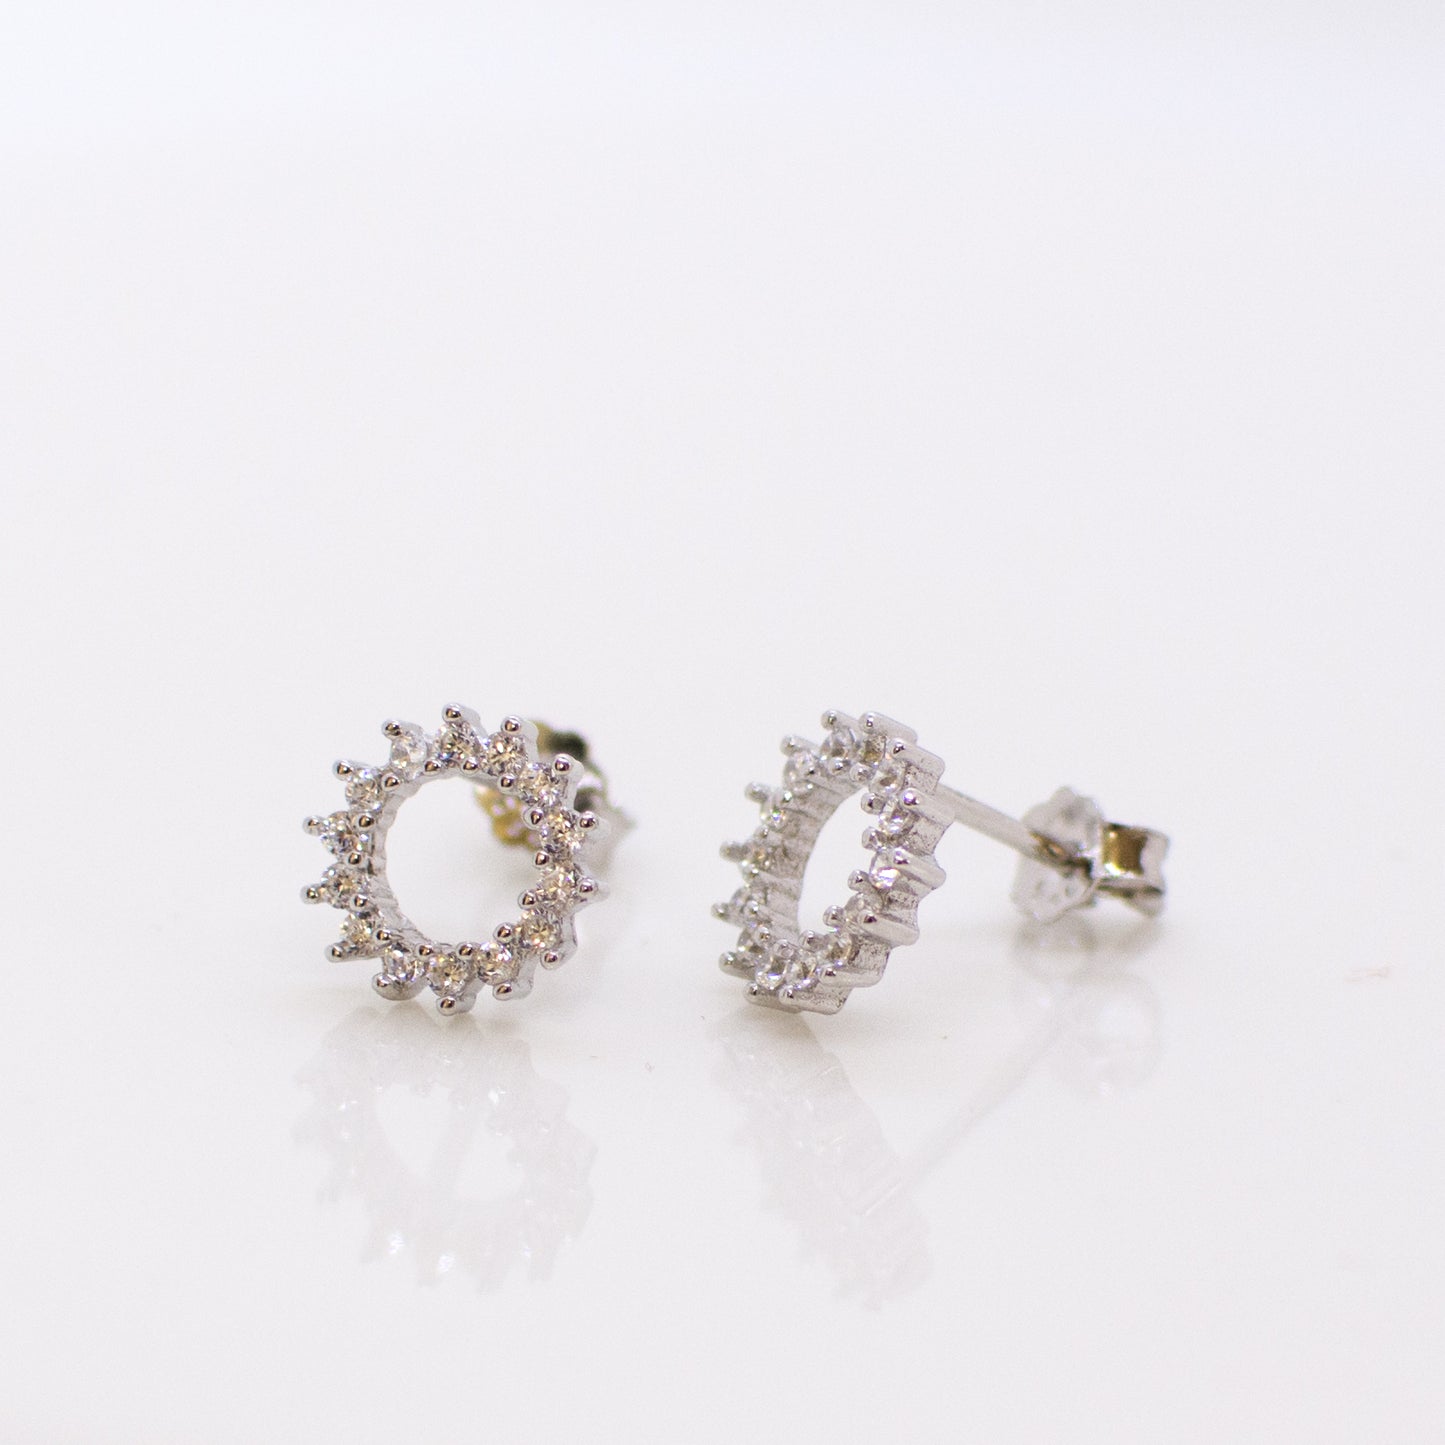 Silver Open Circle CZ Stud Earrings - John Ross Jewellers